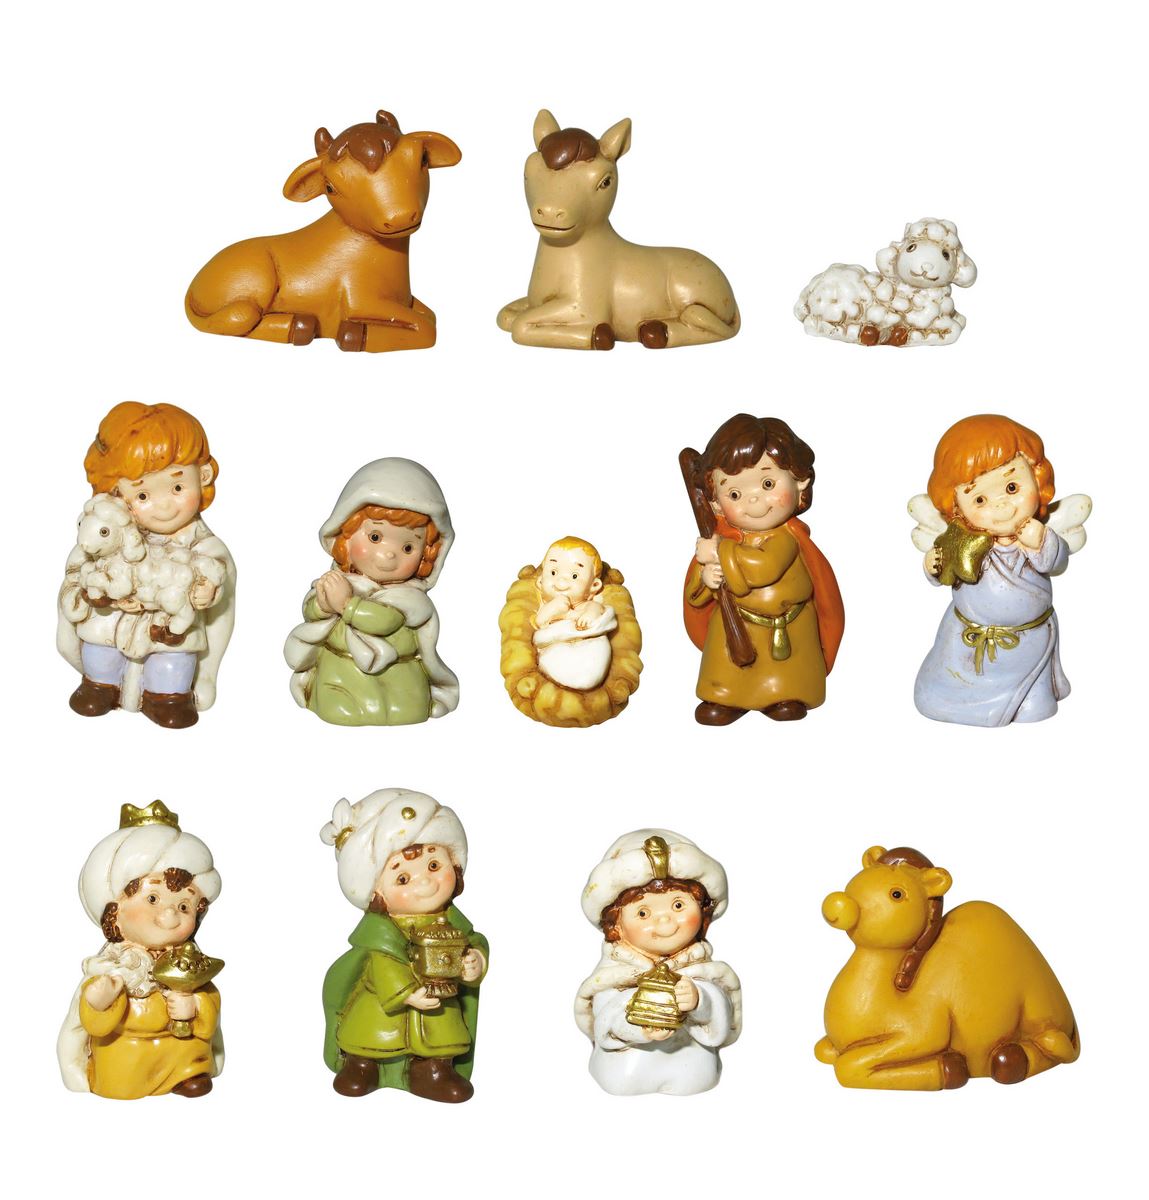 statuine natività: set piccolo presepe da 12 personaggi, in resina colorata (altezza 4 cm circa)